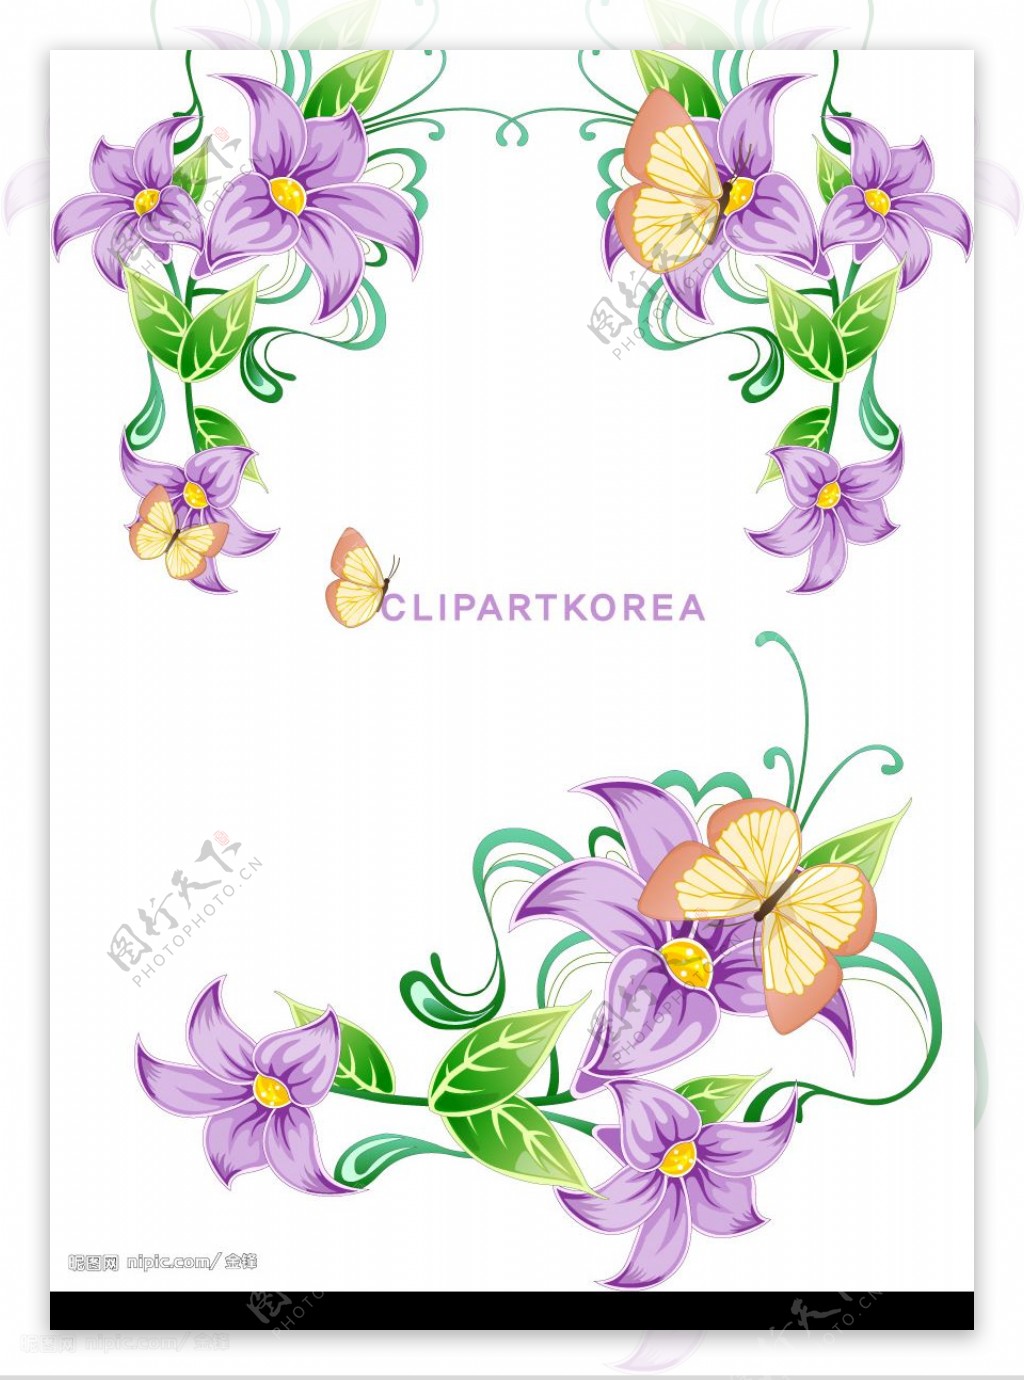 韩国花卉水果与蝴蝶花边矢量素材图片